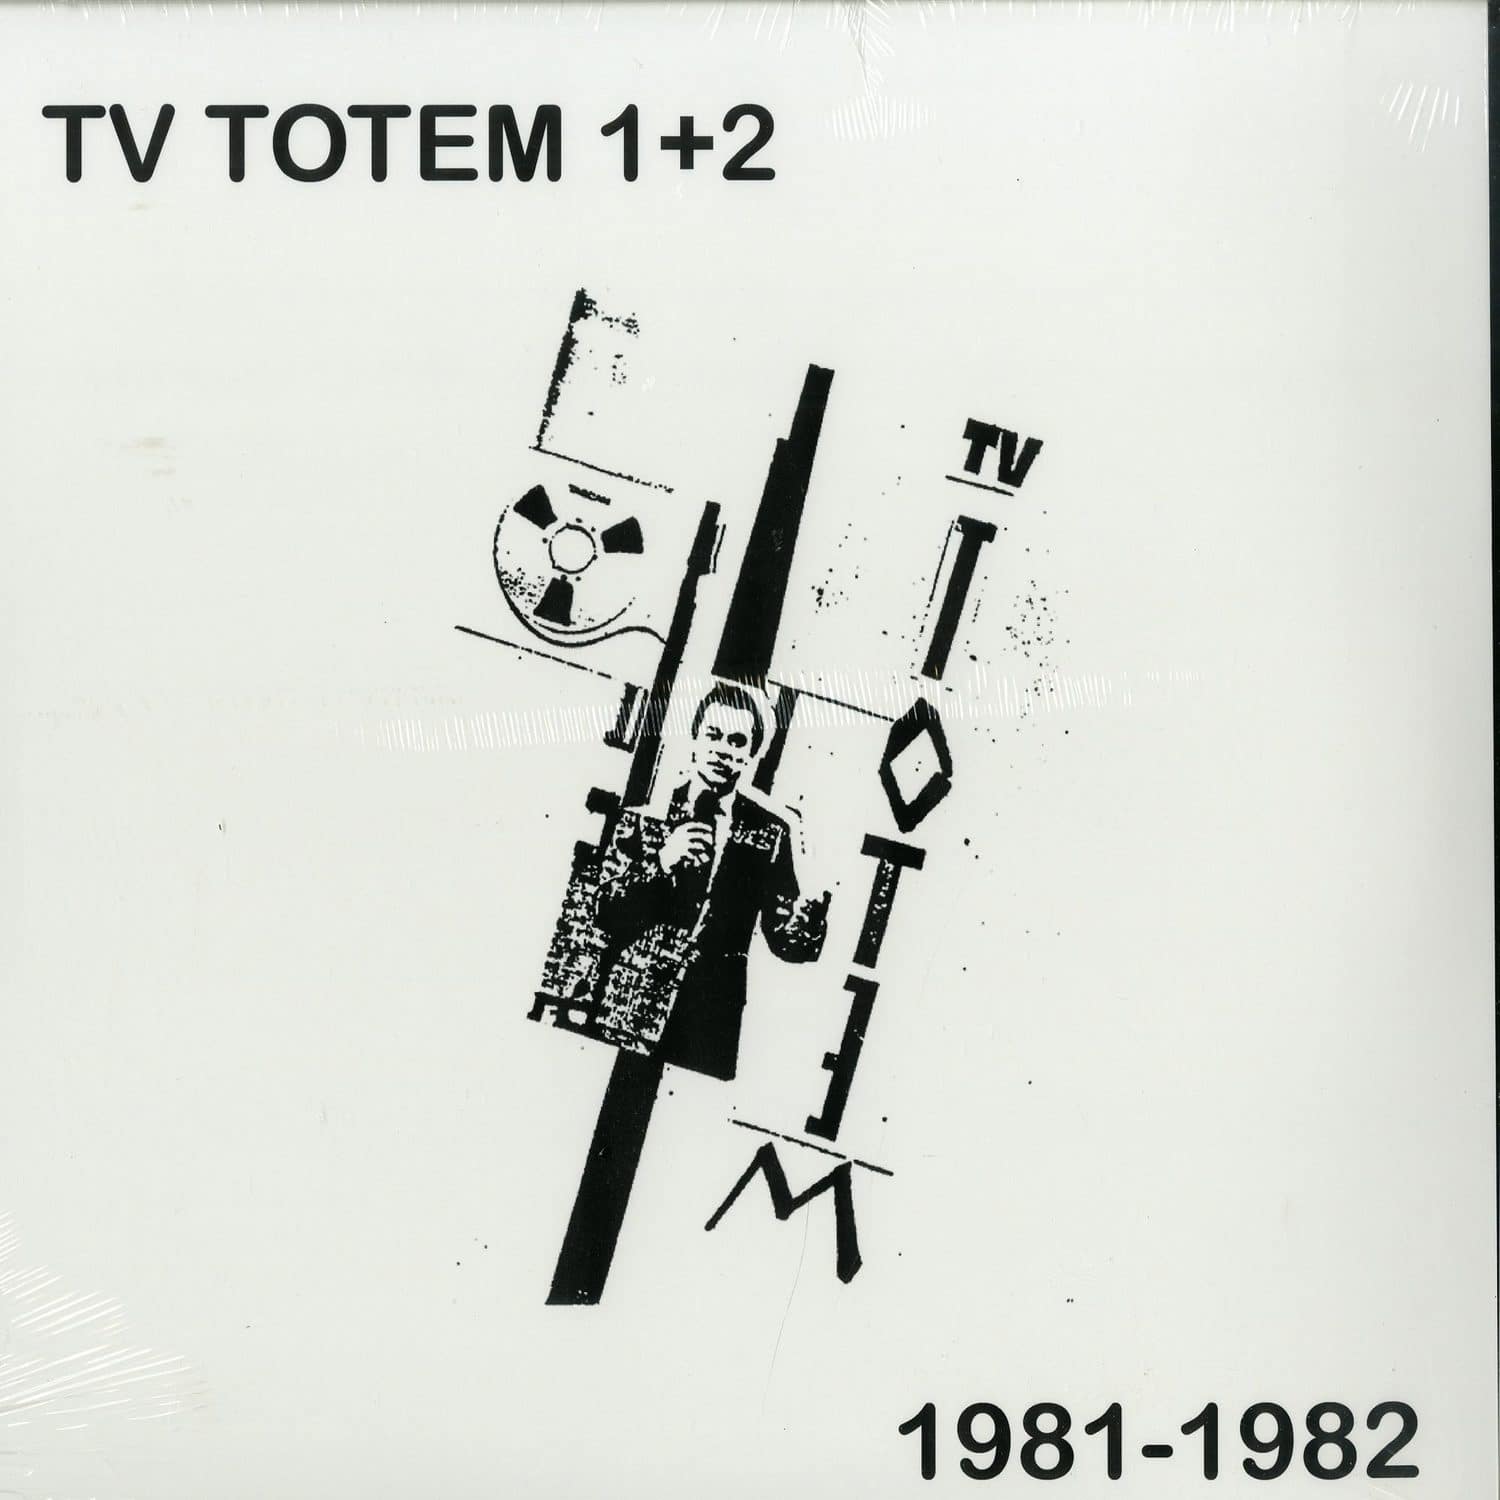 TV Totem - TV TOTEM 1 + 2